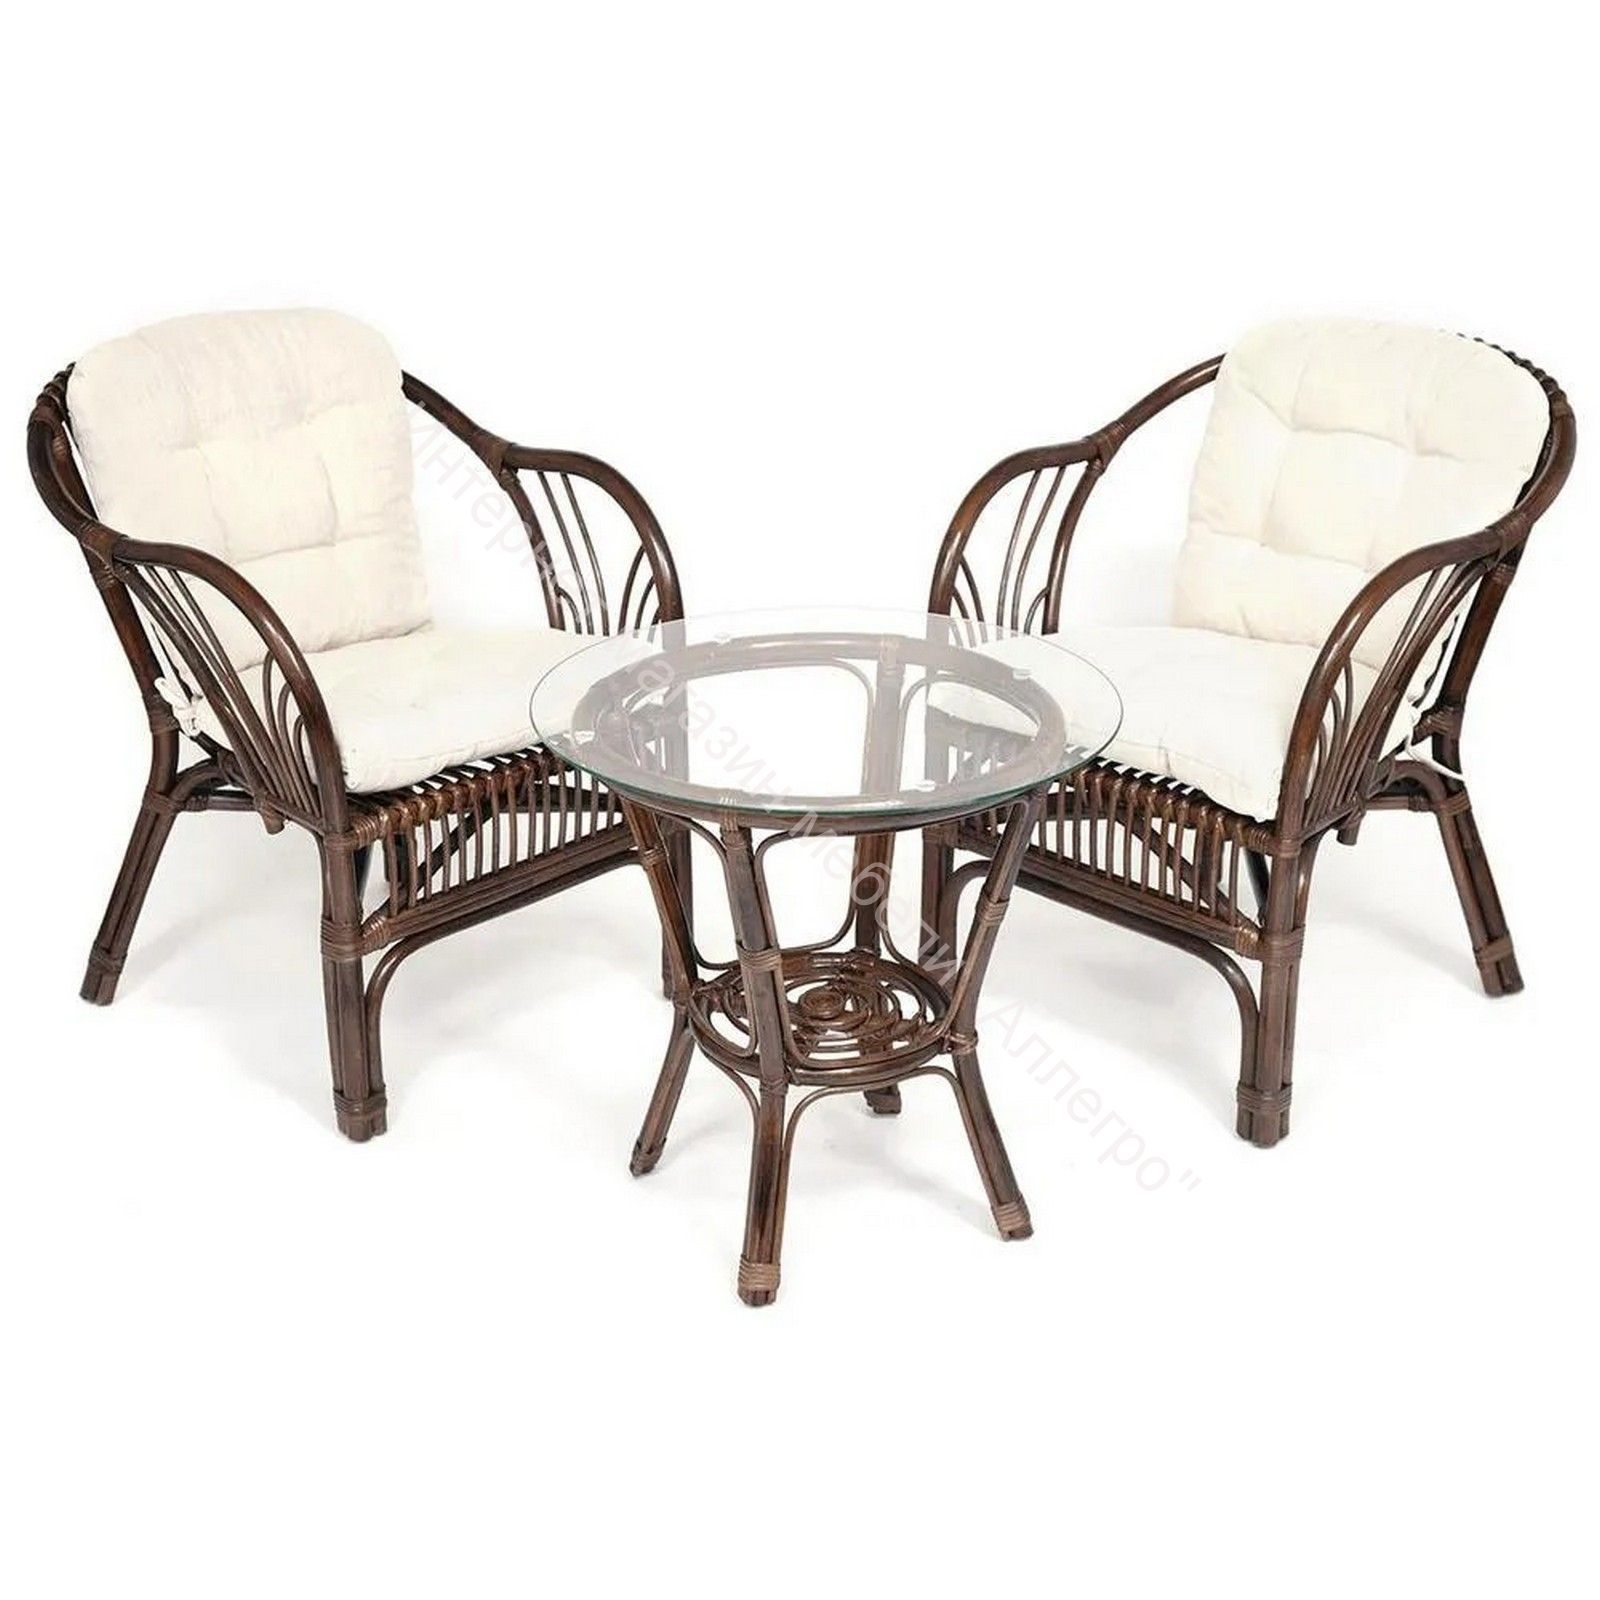 ТЕРРАСНЫЙ КОМПЛЕКТ "NEW BOGOTA" (стол со стеклом + 2 кресла) с подушками, ротанг, walnut (грецкий орех)